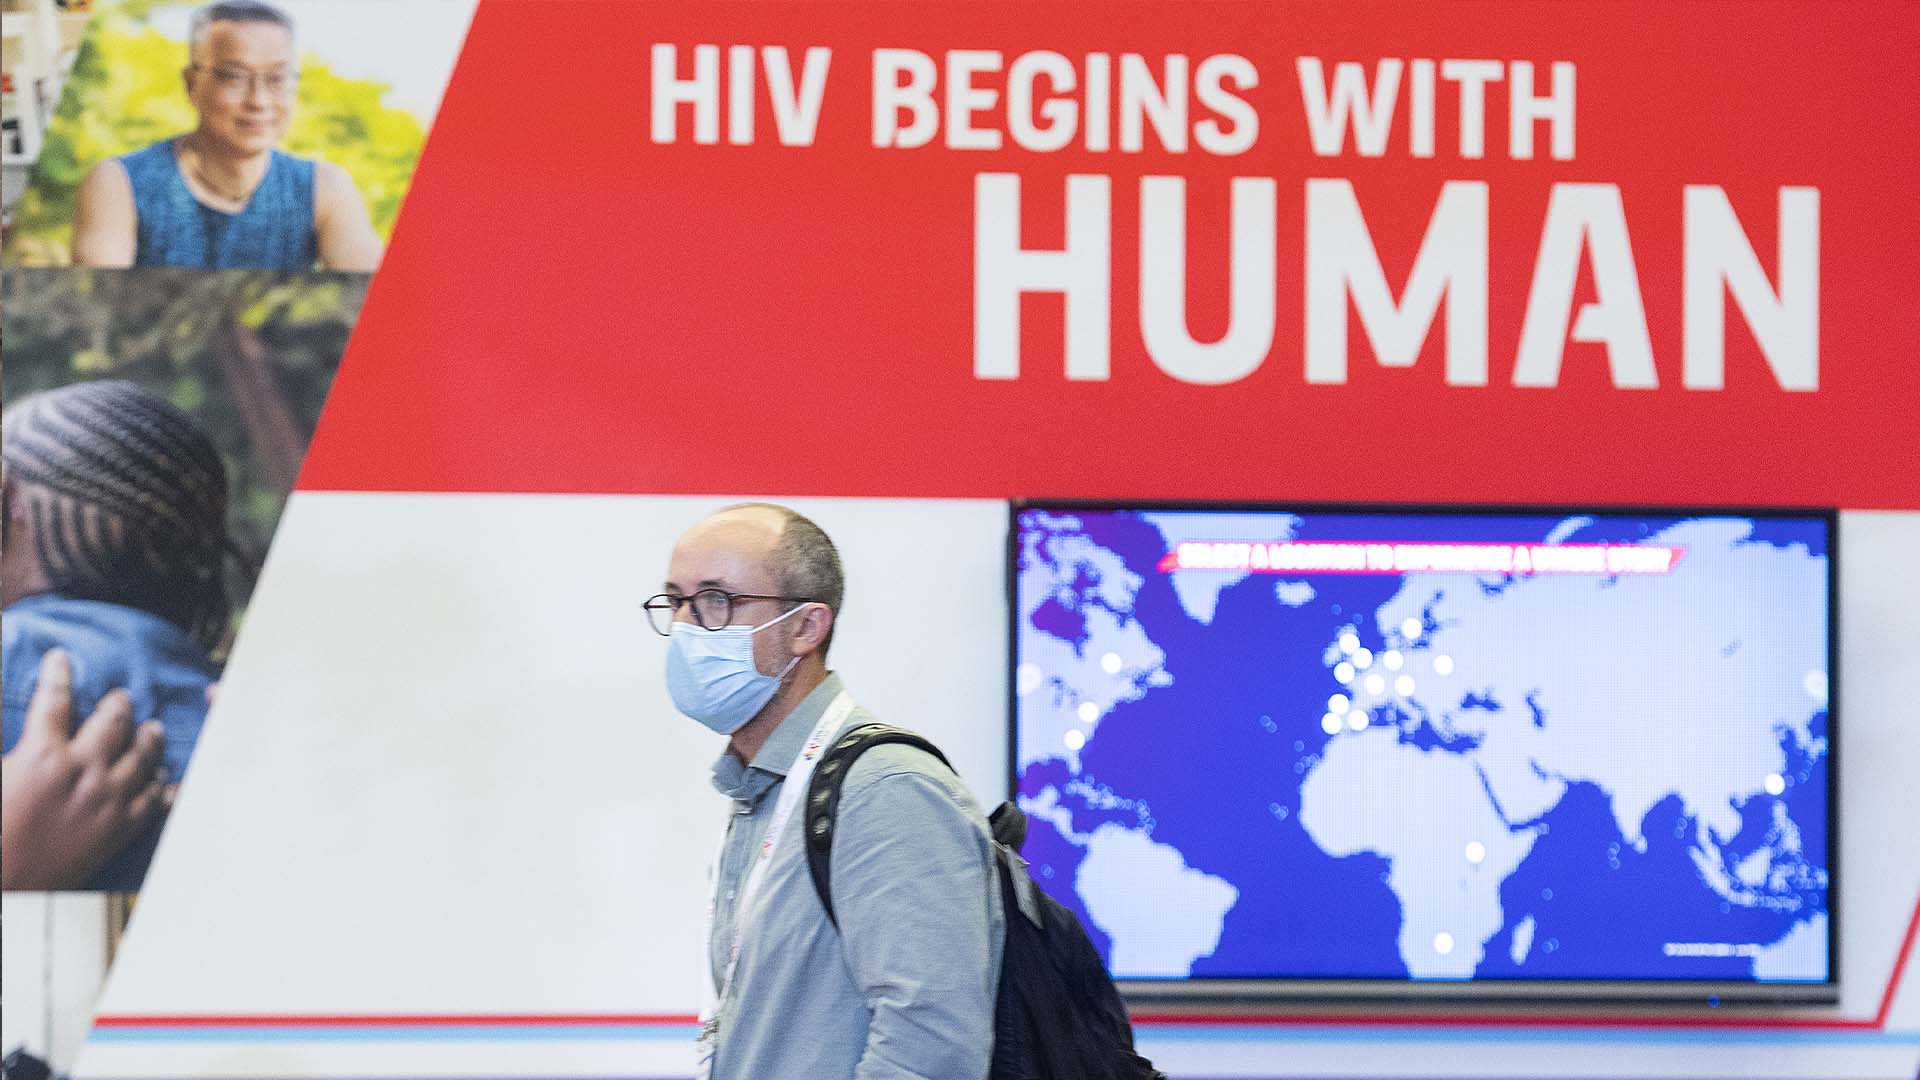 Des experts internationaux s'étaient réunis plus tôt dans la journée pour discuter de la nécessité d'éviter de reproduire les erreurs commises lors de l'arrivée du VIH.